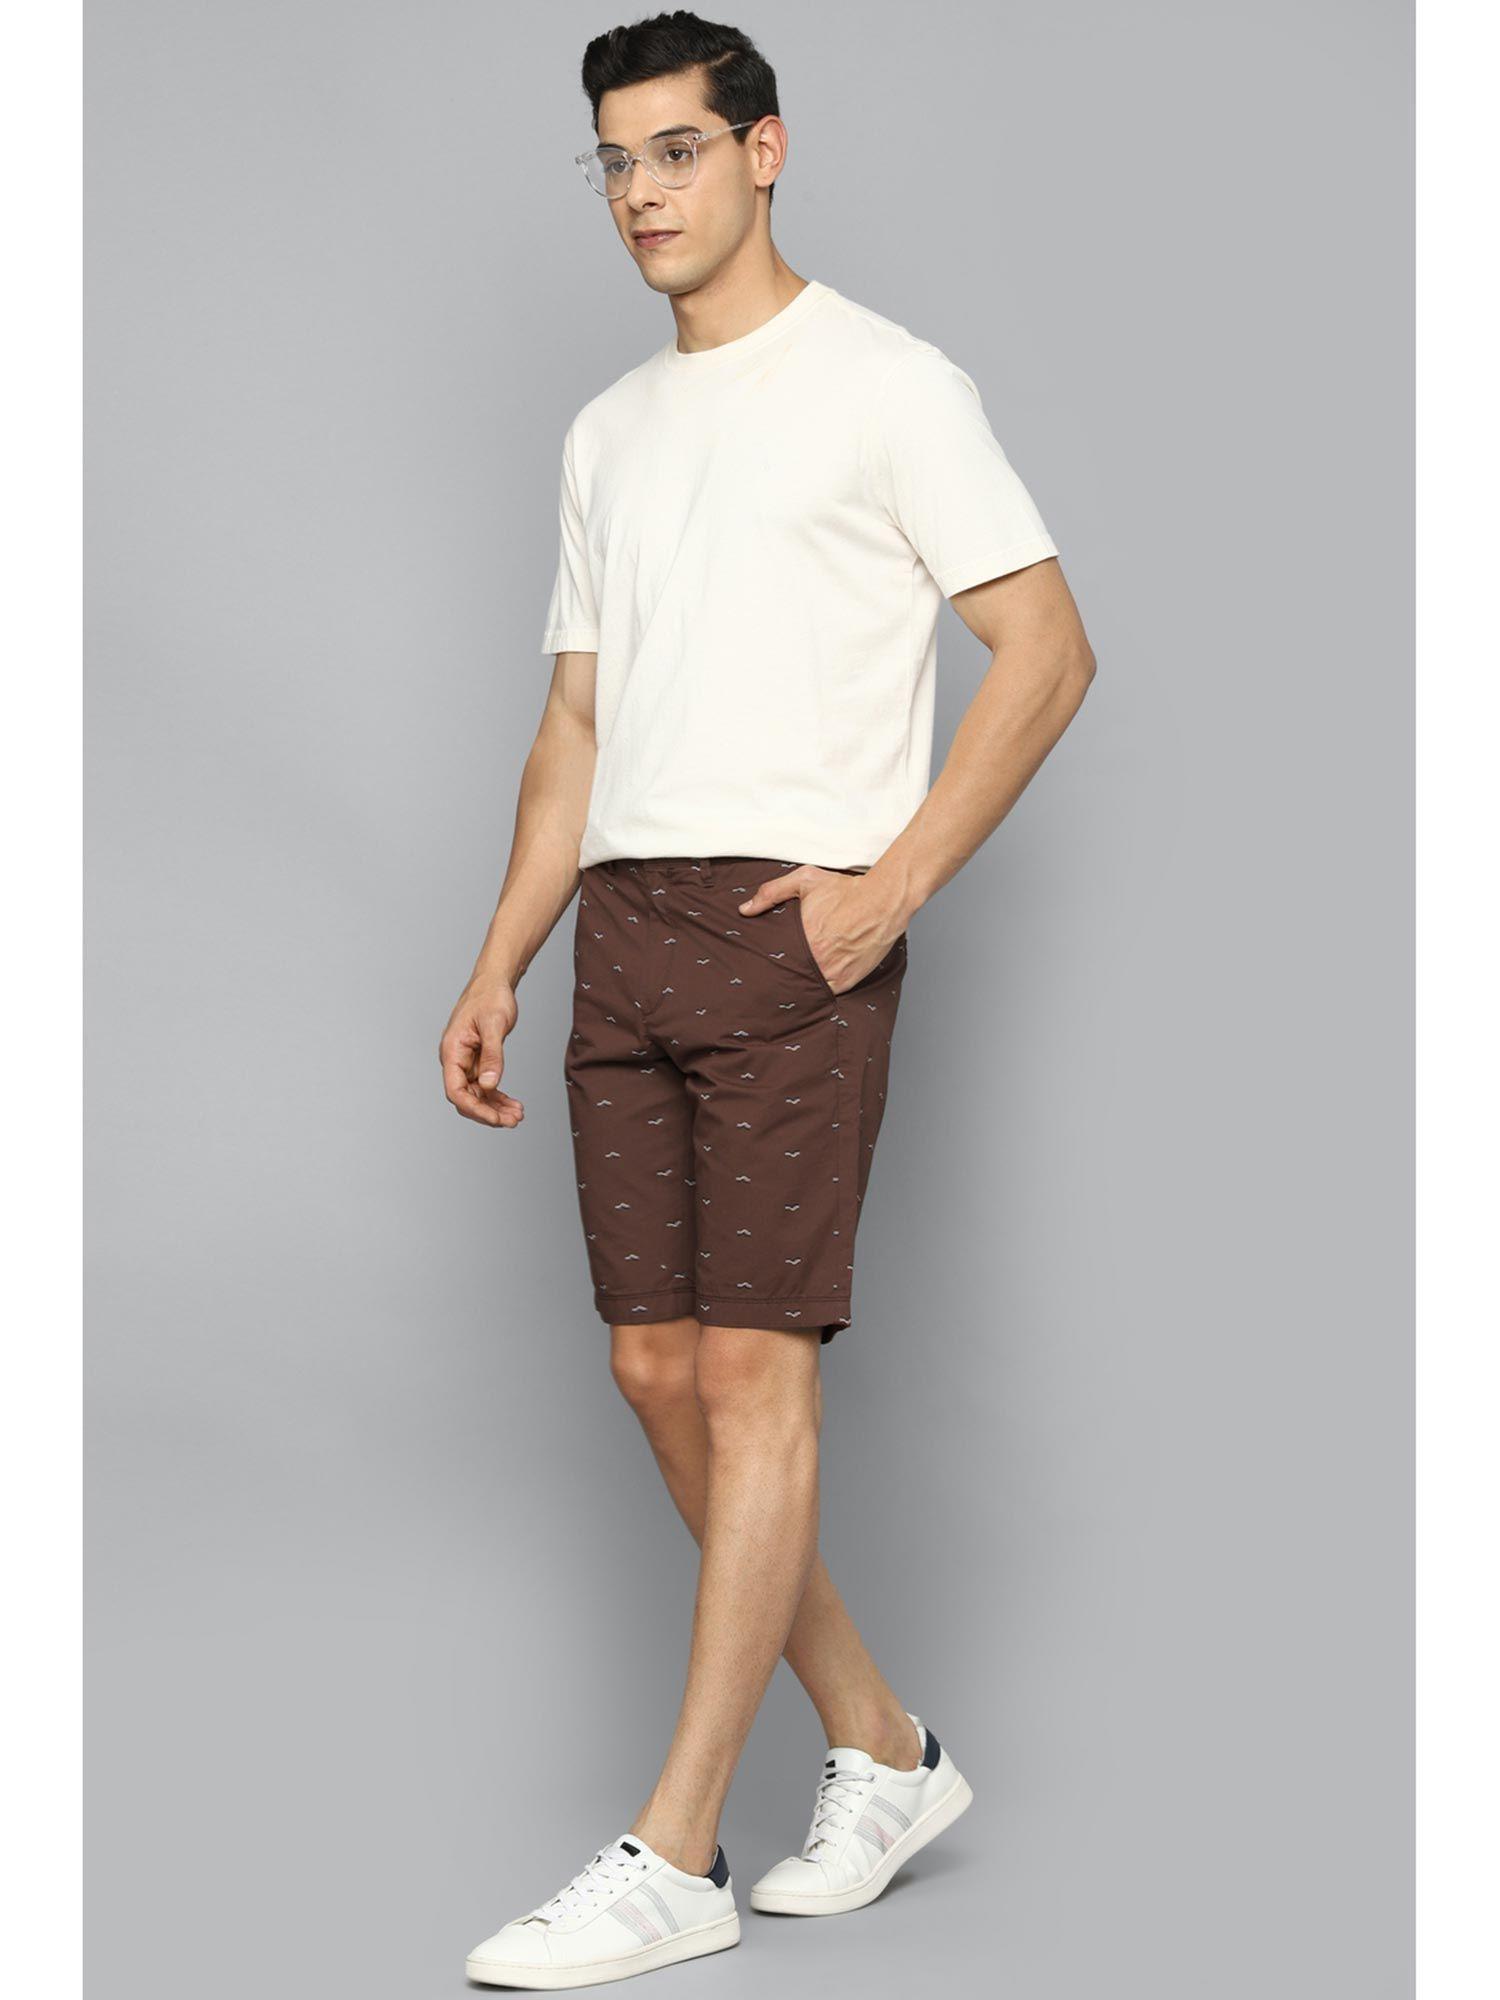 brown-shorts